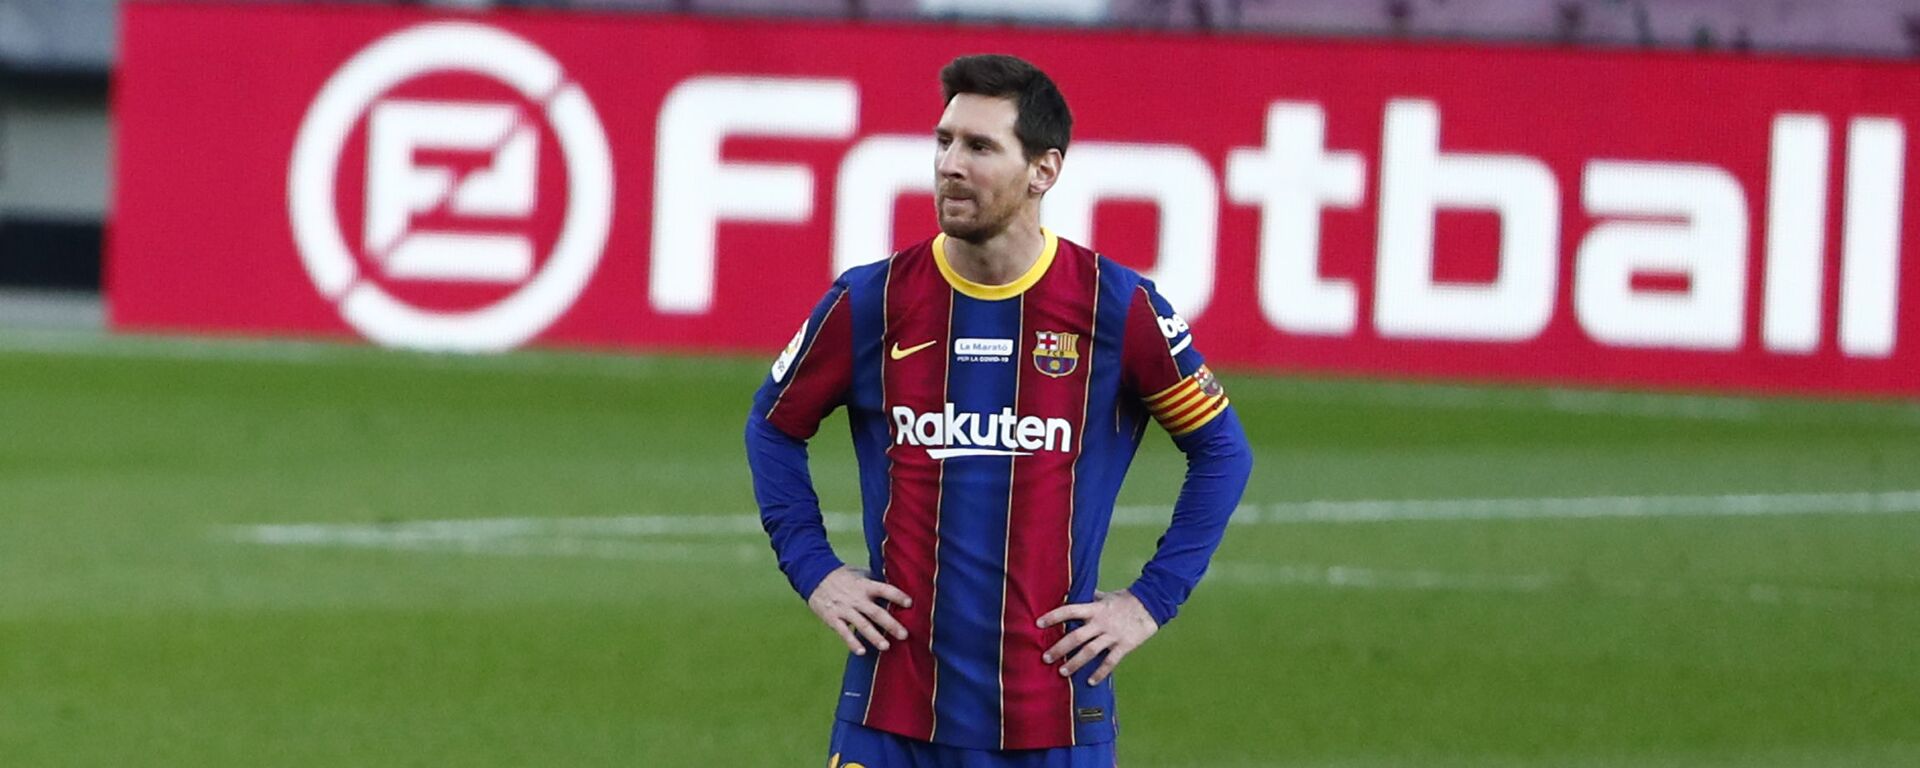 Leo Messi, futbolista argentino - اسپوتنیک افغانستان  , 1920, 17.02.2021